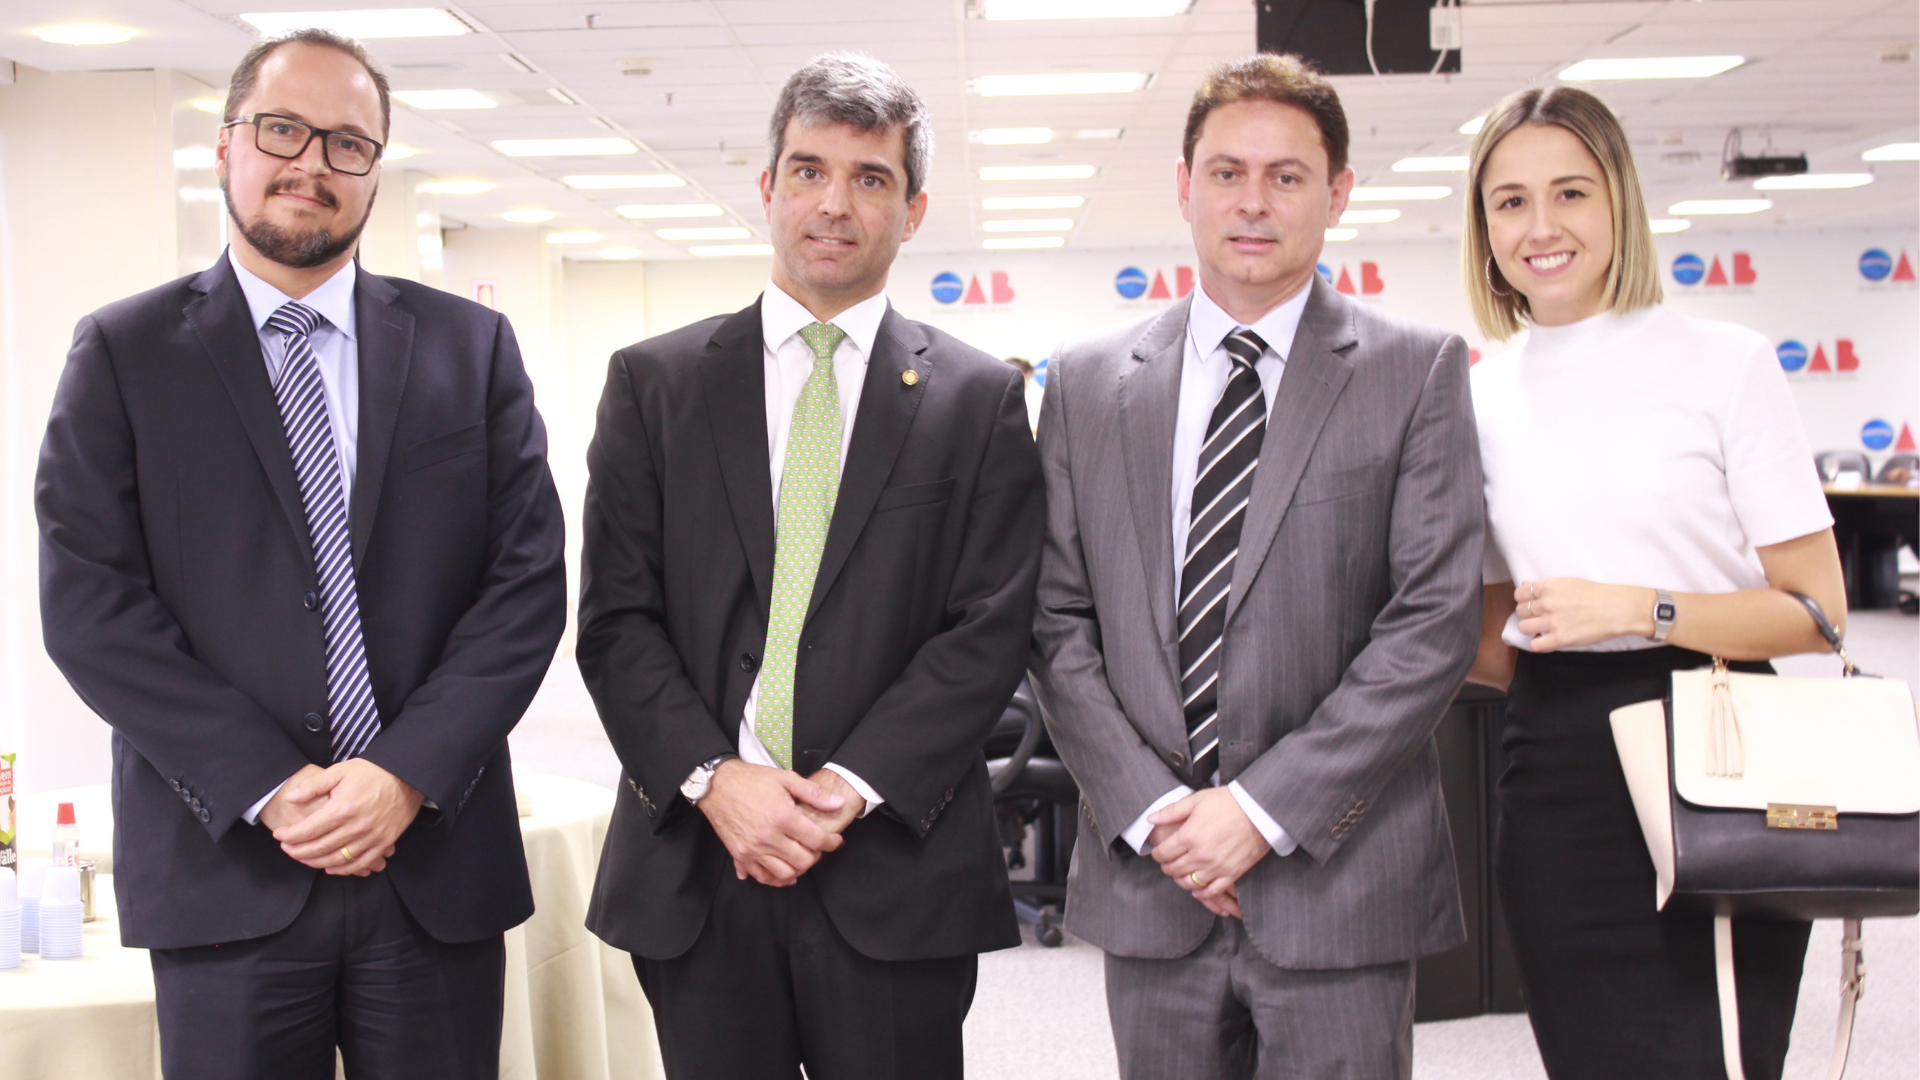 Diretor de prerrogativas profissionais da Auditar, André Villanova; Dr. Juliano Costa Couto; Presidente da Auditar, Wederson Moreira e Dra. Carolina Dias